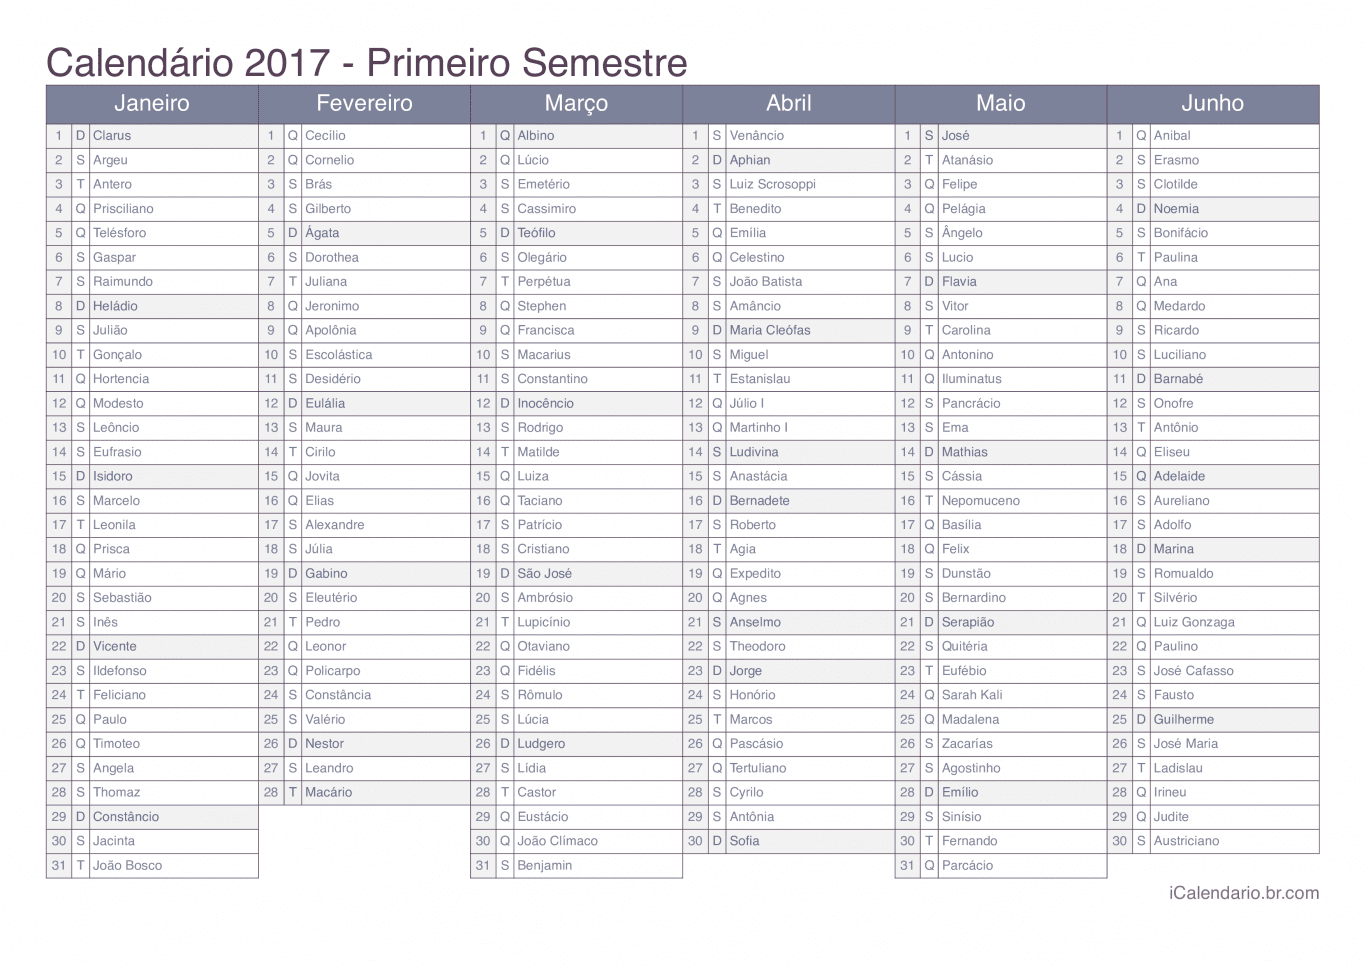 Calendário por semestre 2017 com festa do dia - Office